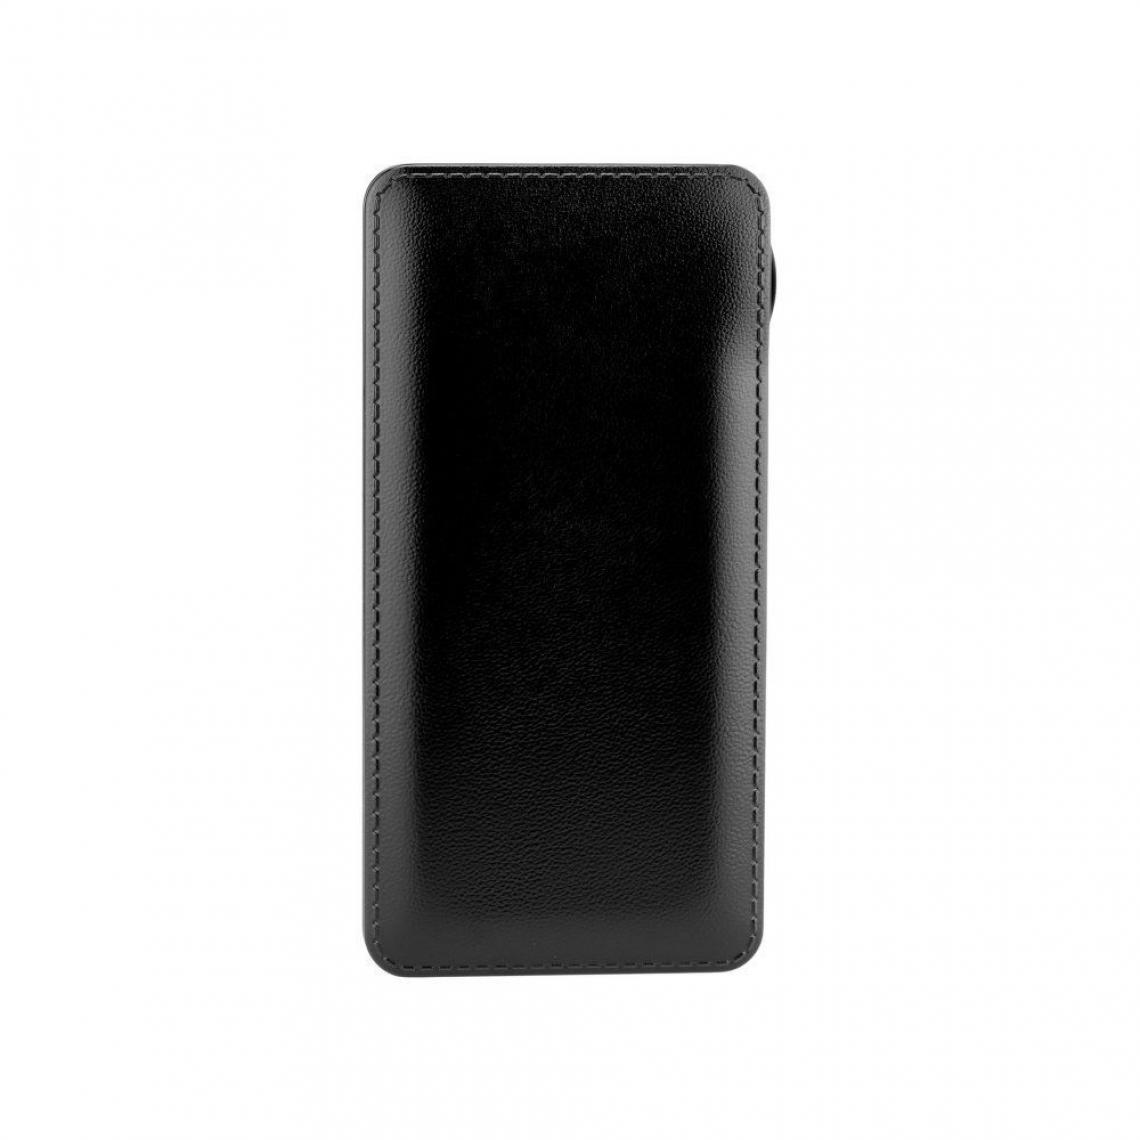 Ozzzo - Chargeur batterie externe 20000 mAh powerbank ozzzo noir pour Samsung Galaxy F41 - Autres accessoires smartphone